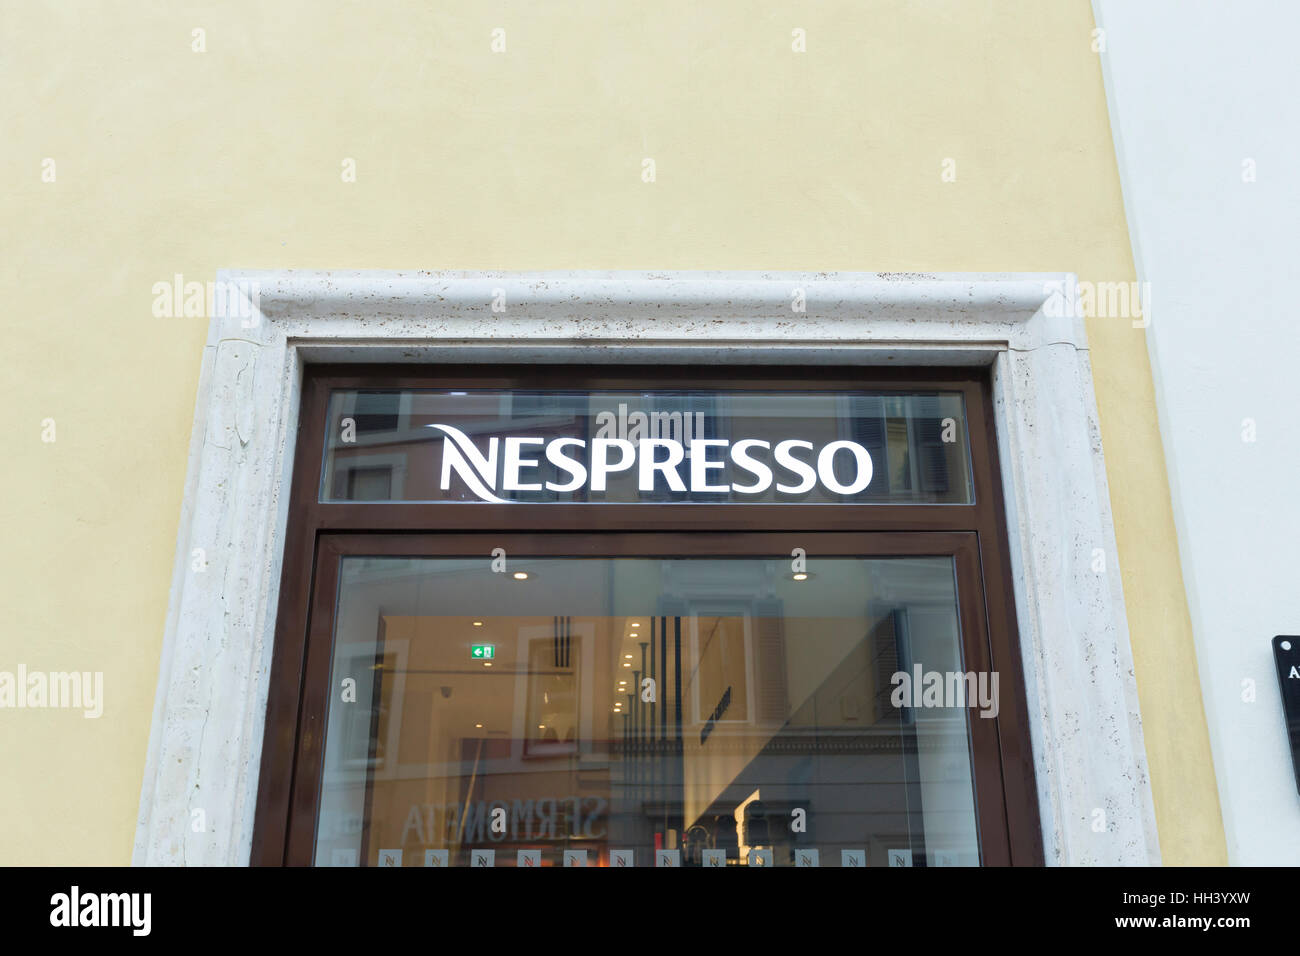 Nespresso shop Stock Photo